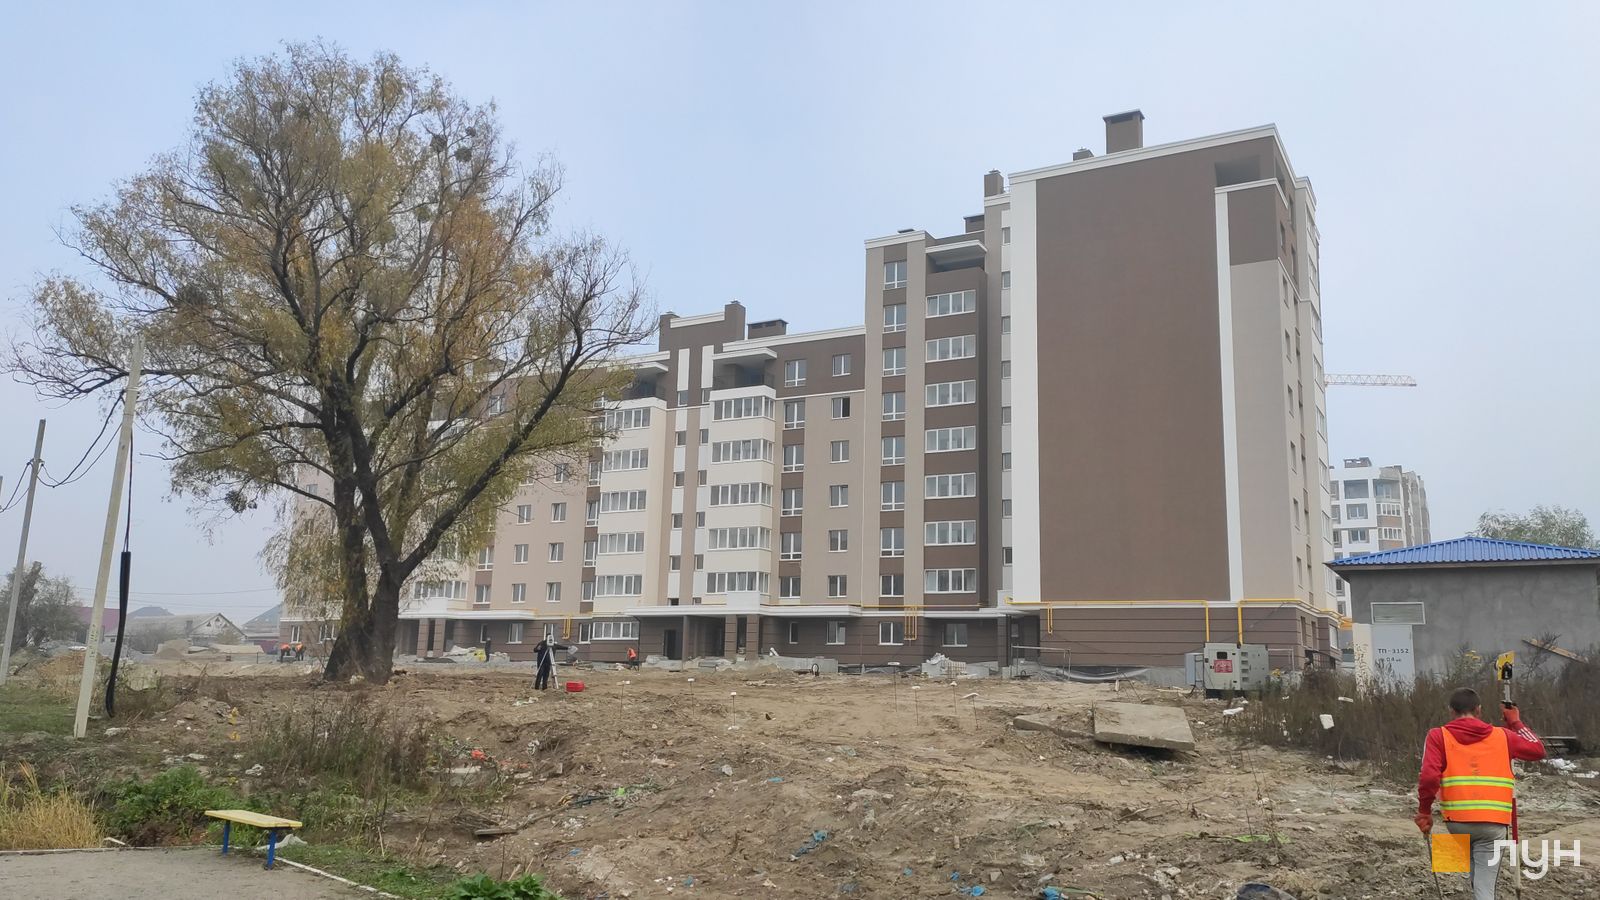 Моніторинг будівництва ЖК Озерний Гай (Гатне) - Ракурс 14, жовтень 2019